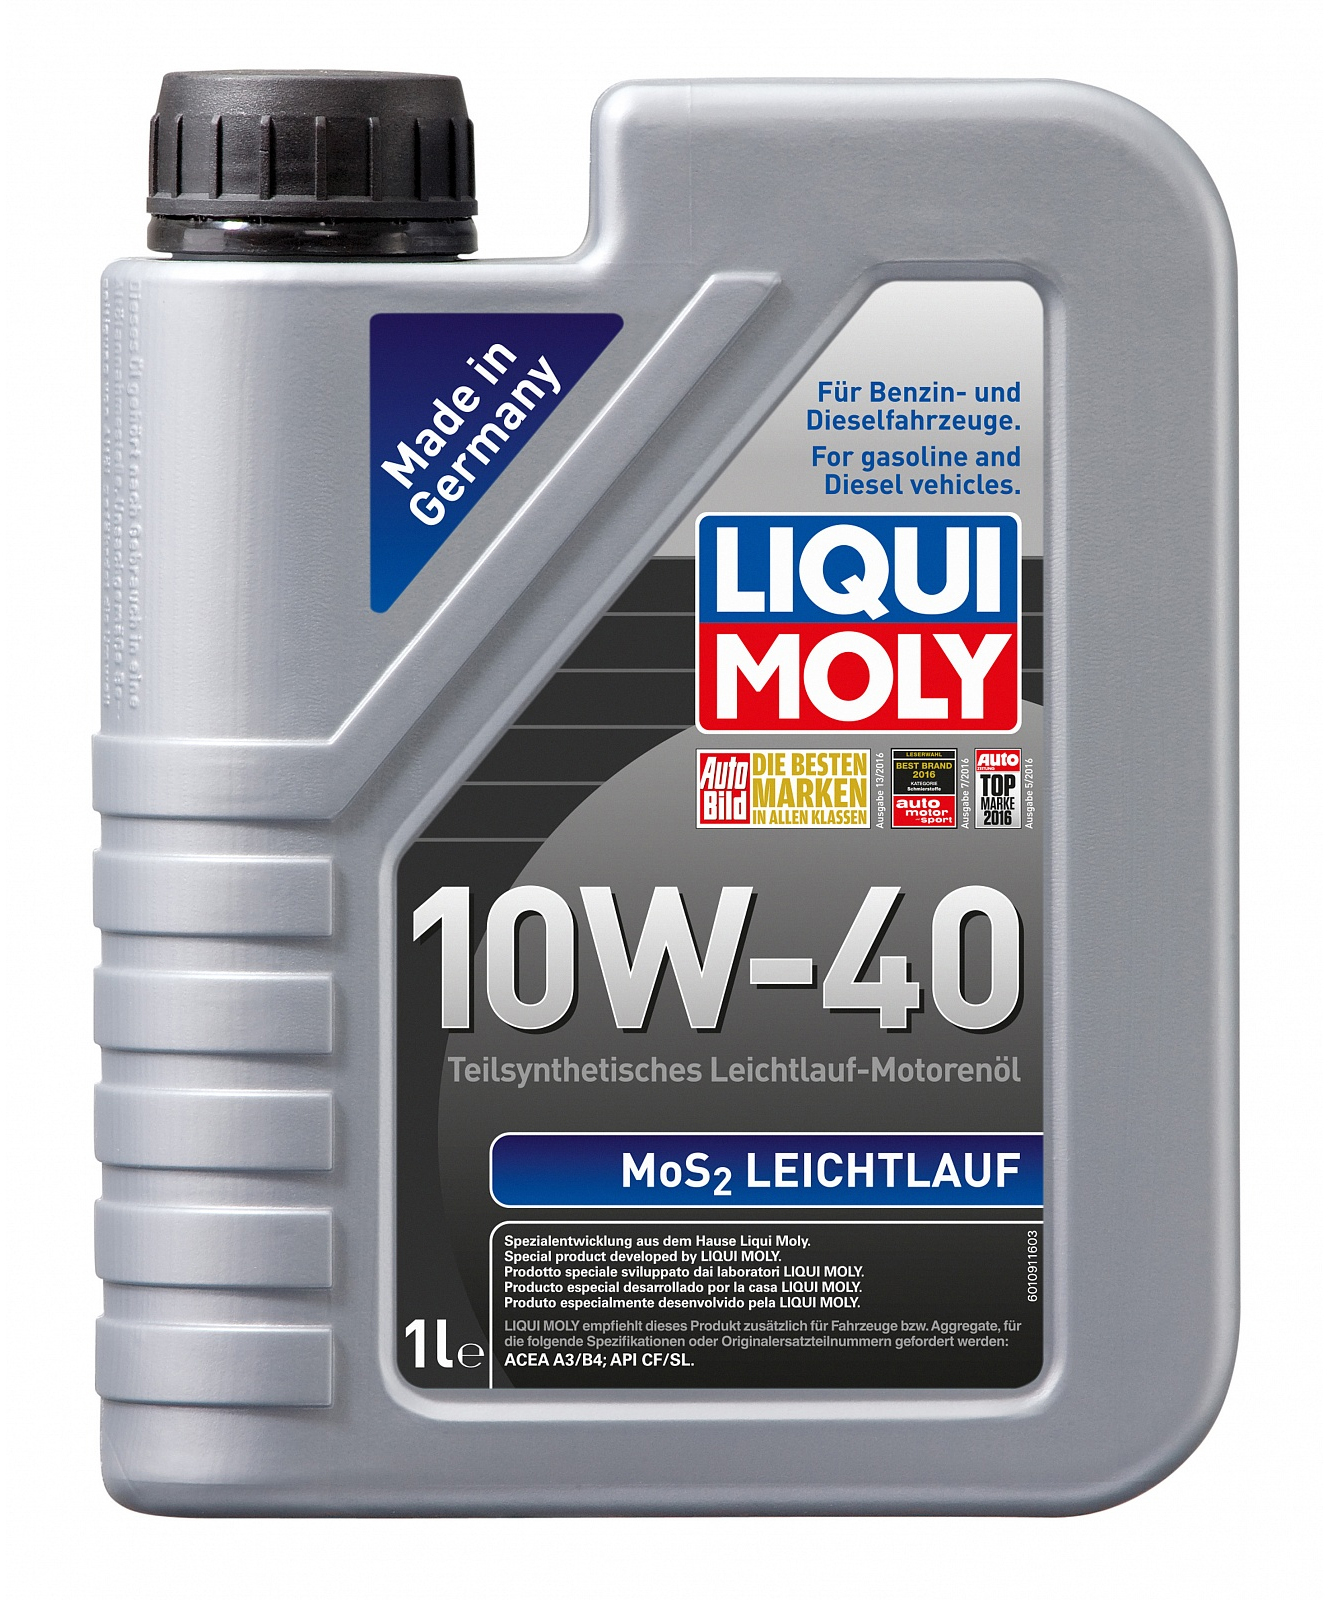 Купить моторное масло Liqui Moly MoS2 Leichtlauf 10W-40 1 л в Херсоне